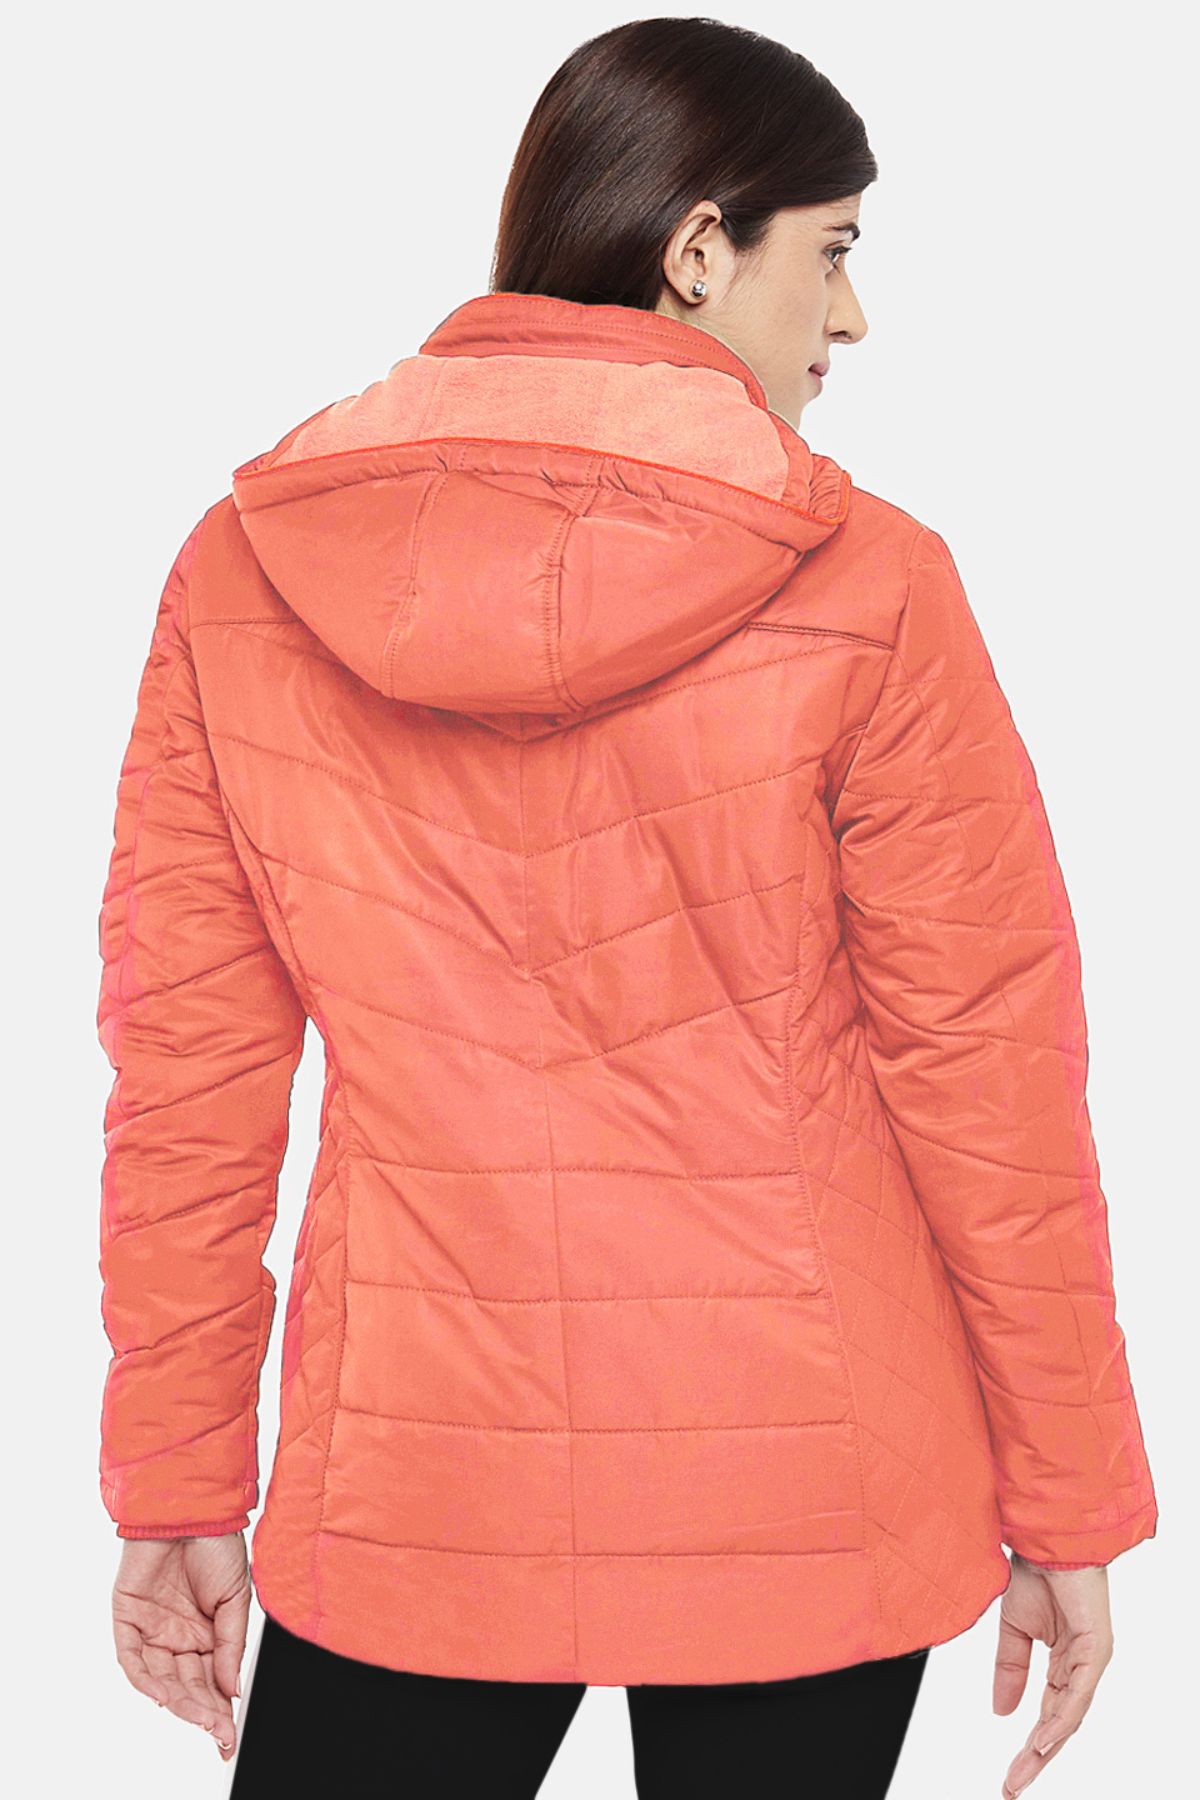 Coral Fleece Lined Puffer Jacket | Women